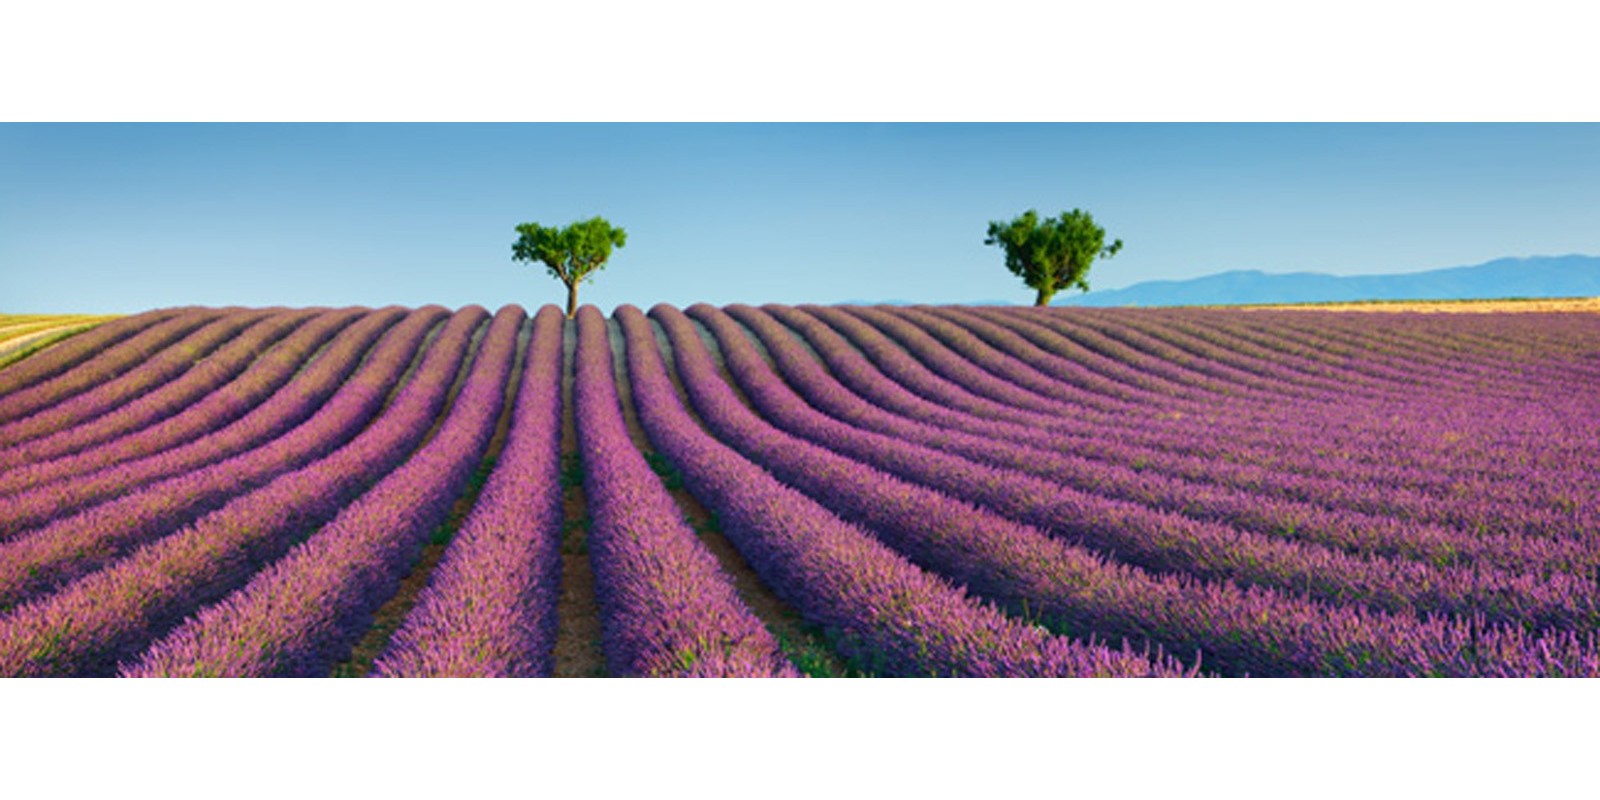 Frank Krahmer - Lavender field, Provence, France